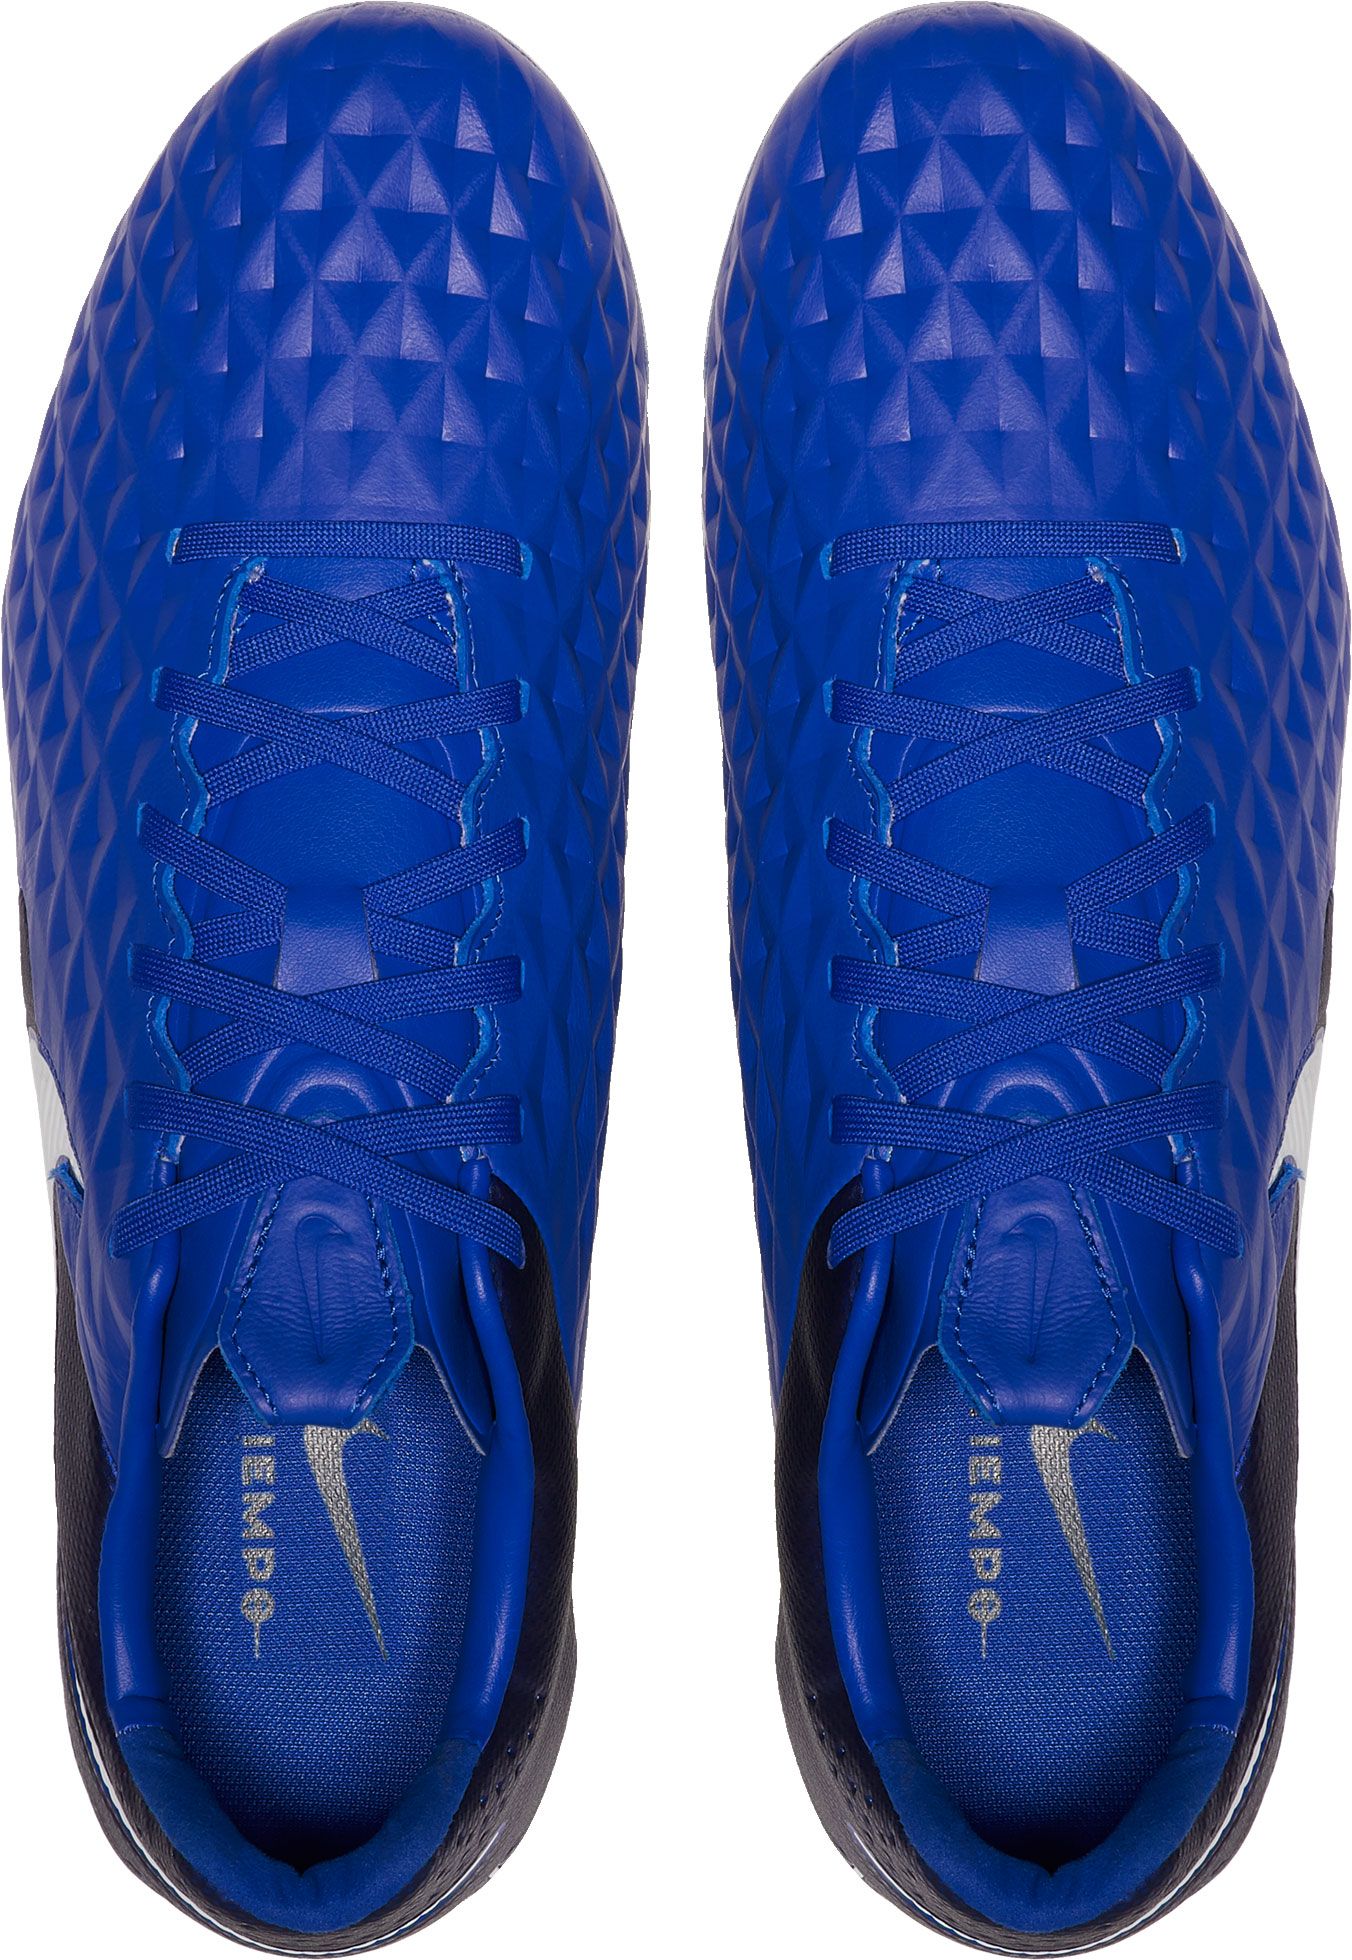 Lightest Nike Weather Legend 8 Elite FG Soccer Cleats Blue.